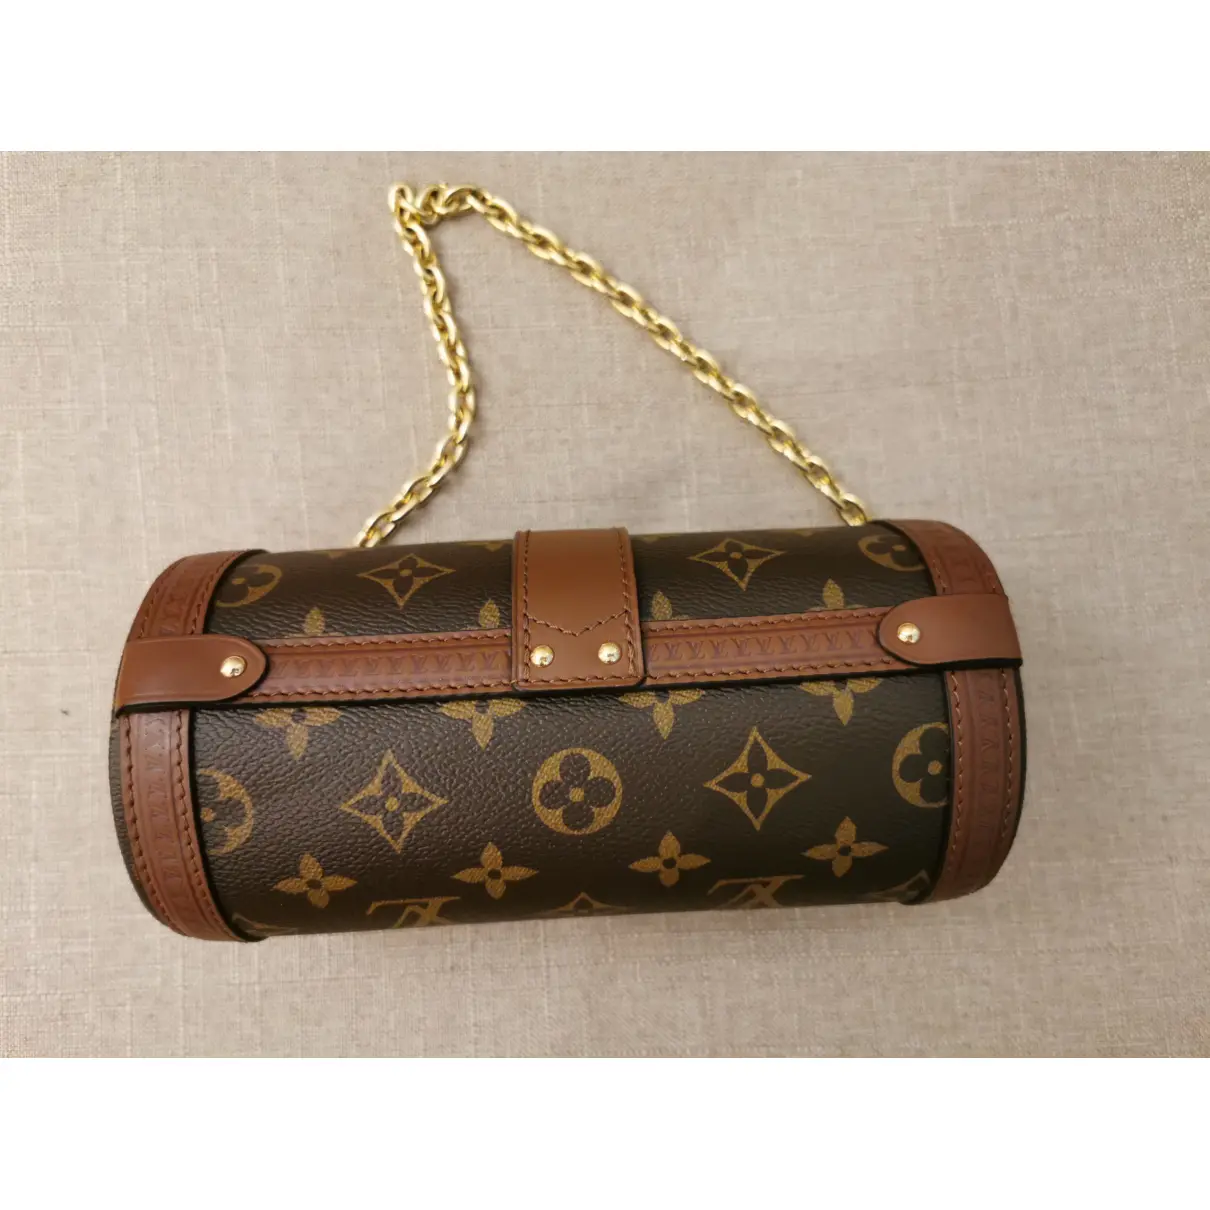 Buy Louis Vuitton Papillon Trunk cloth handbag online